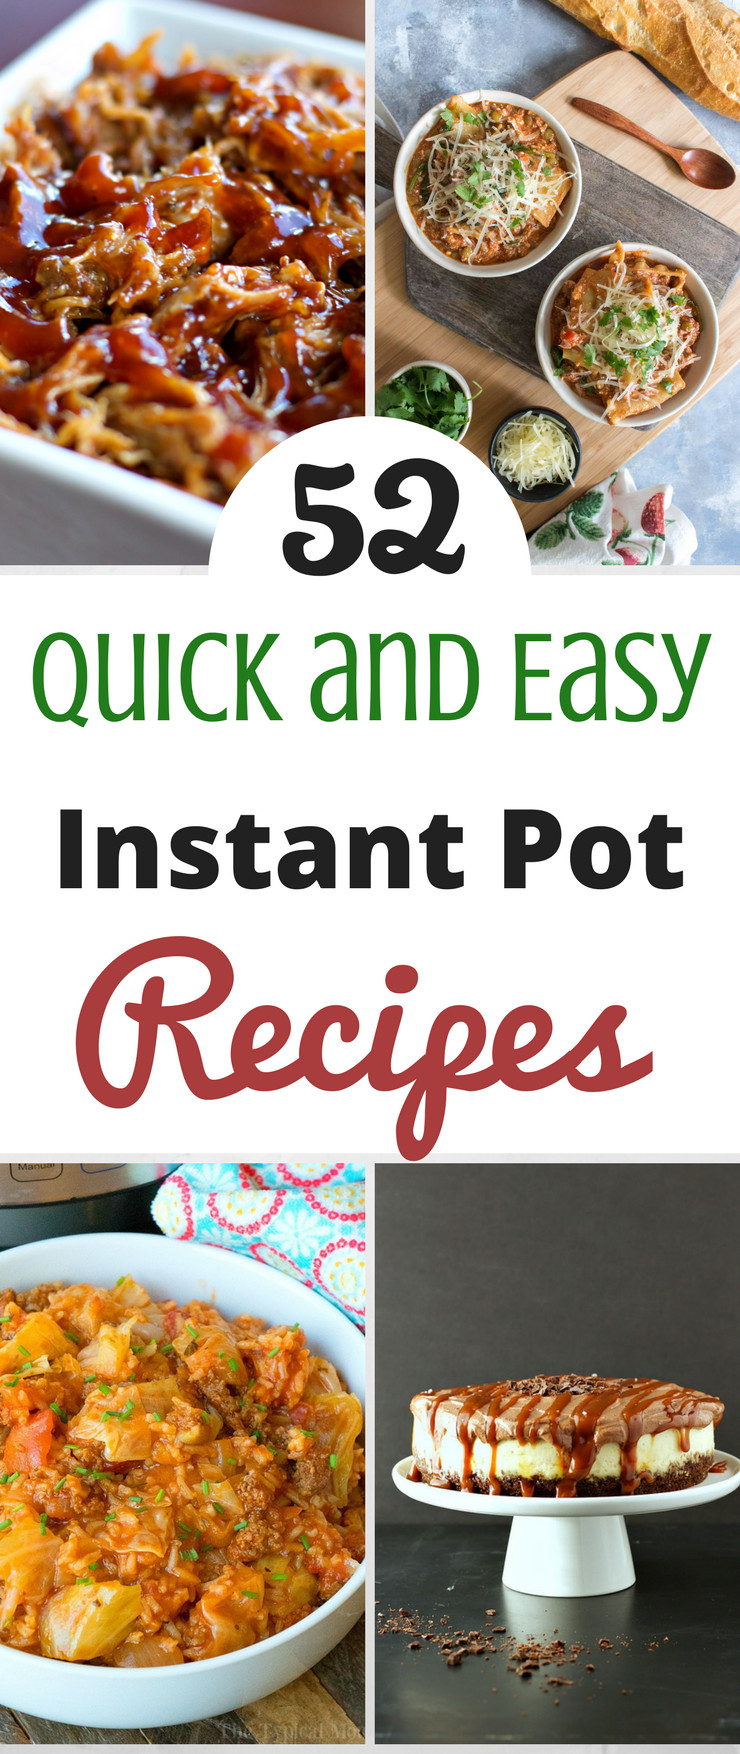 Quick Instant Pot Recipes
 52 Quick and Easy Instant Pot Recipes SlickHousewives